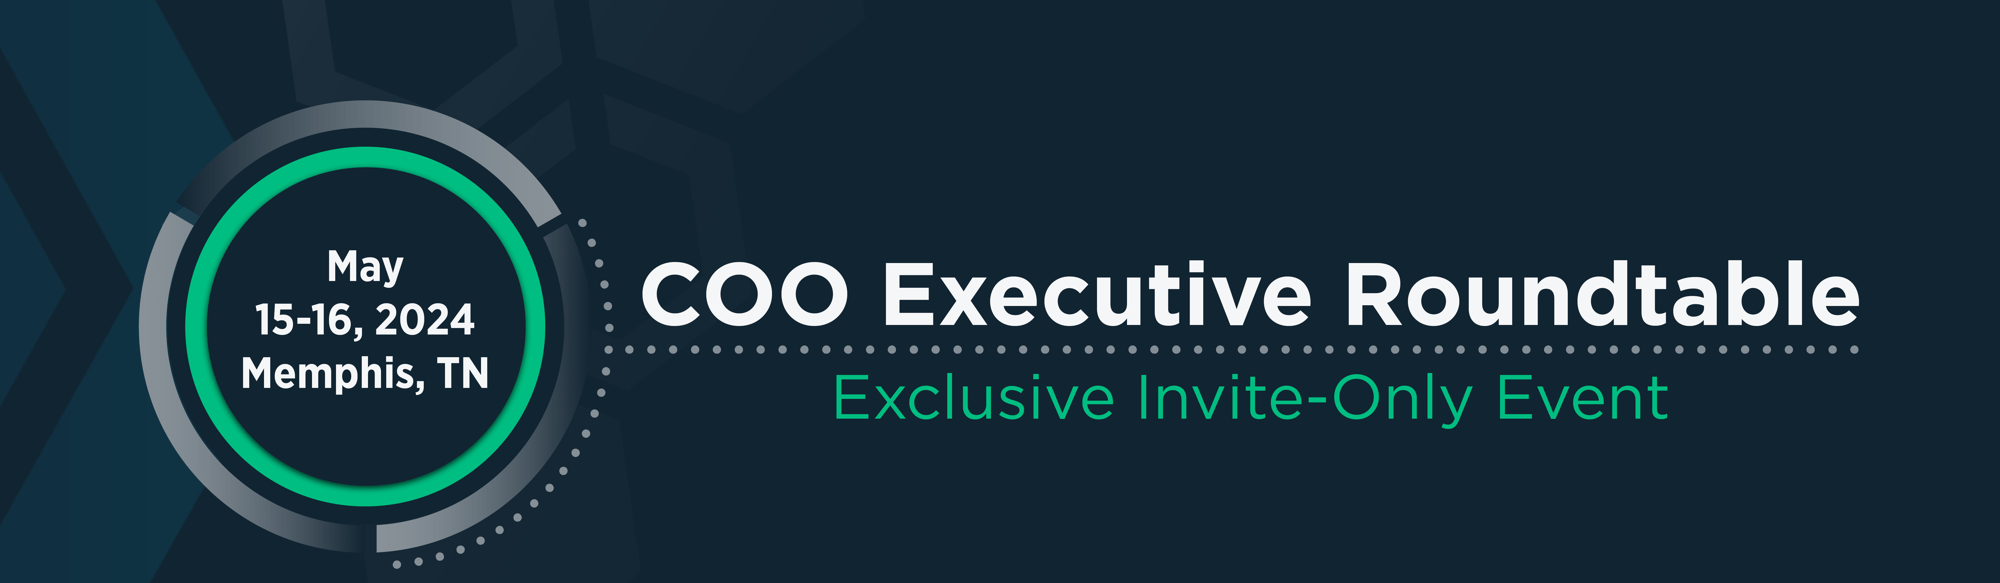 COO Executive Roundtable Header (2)